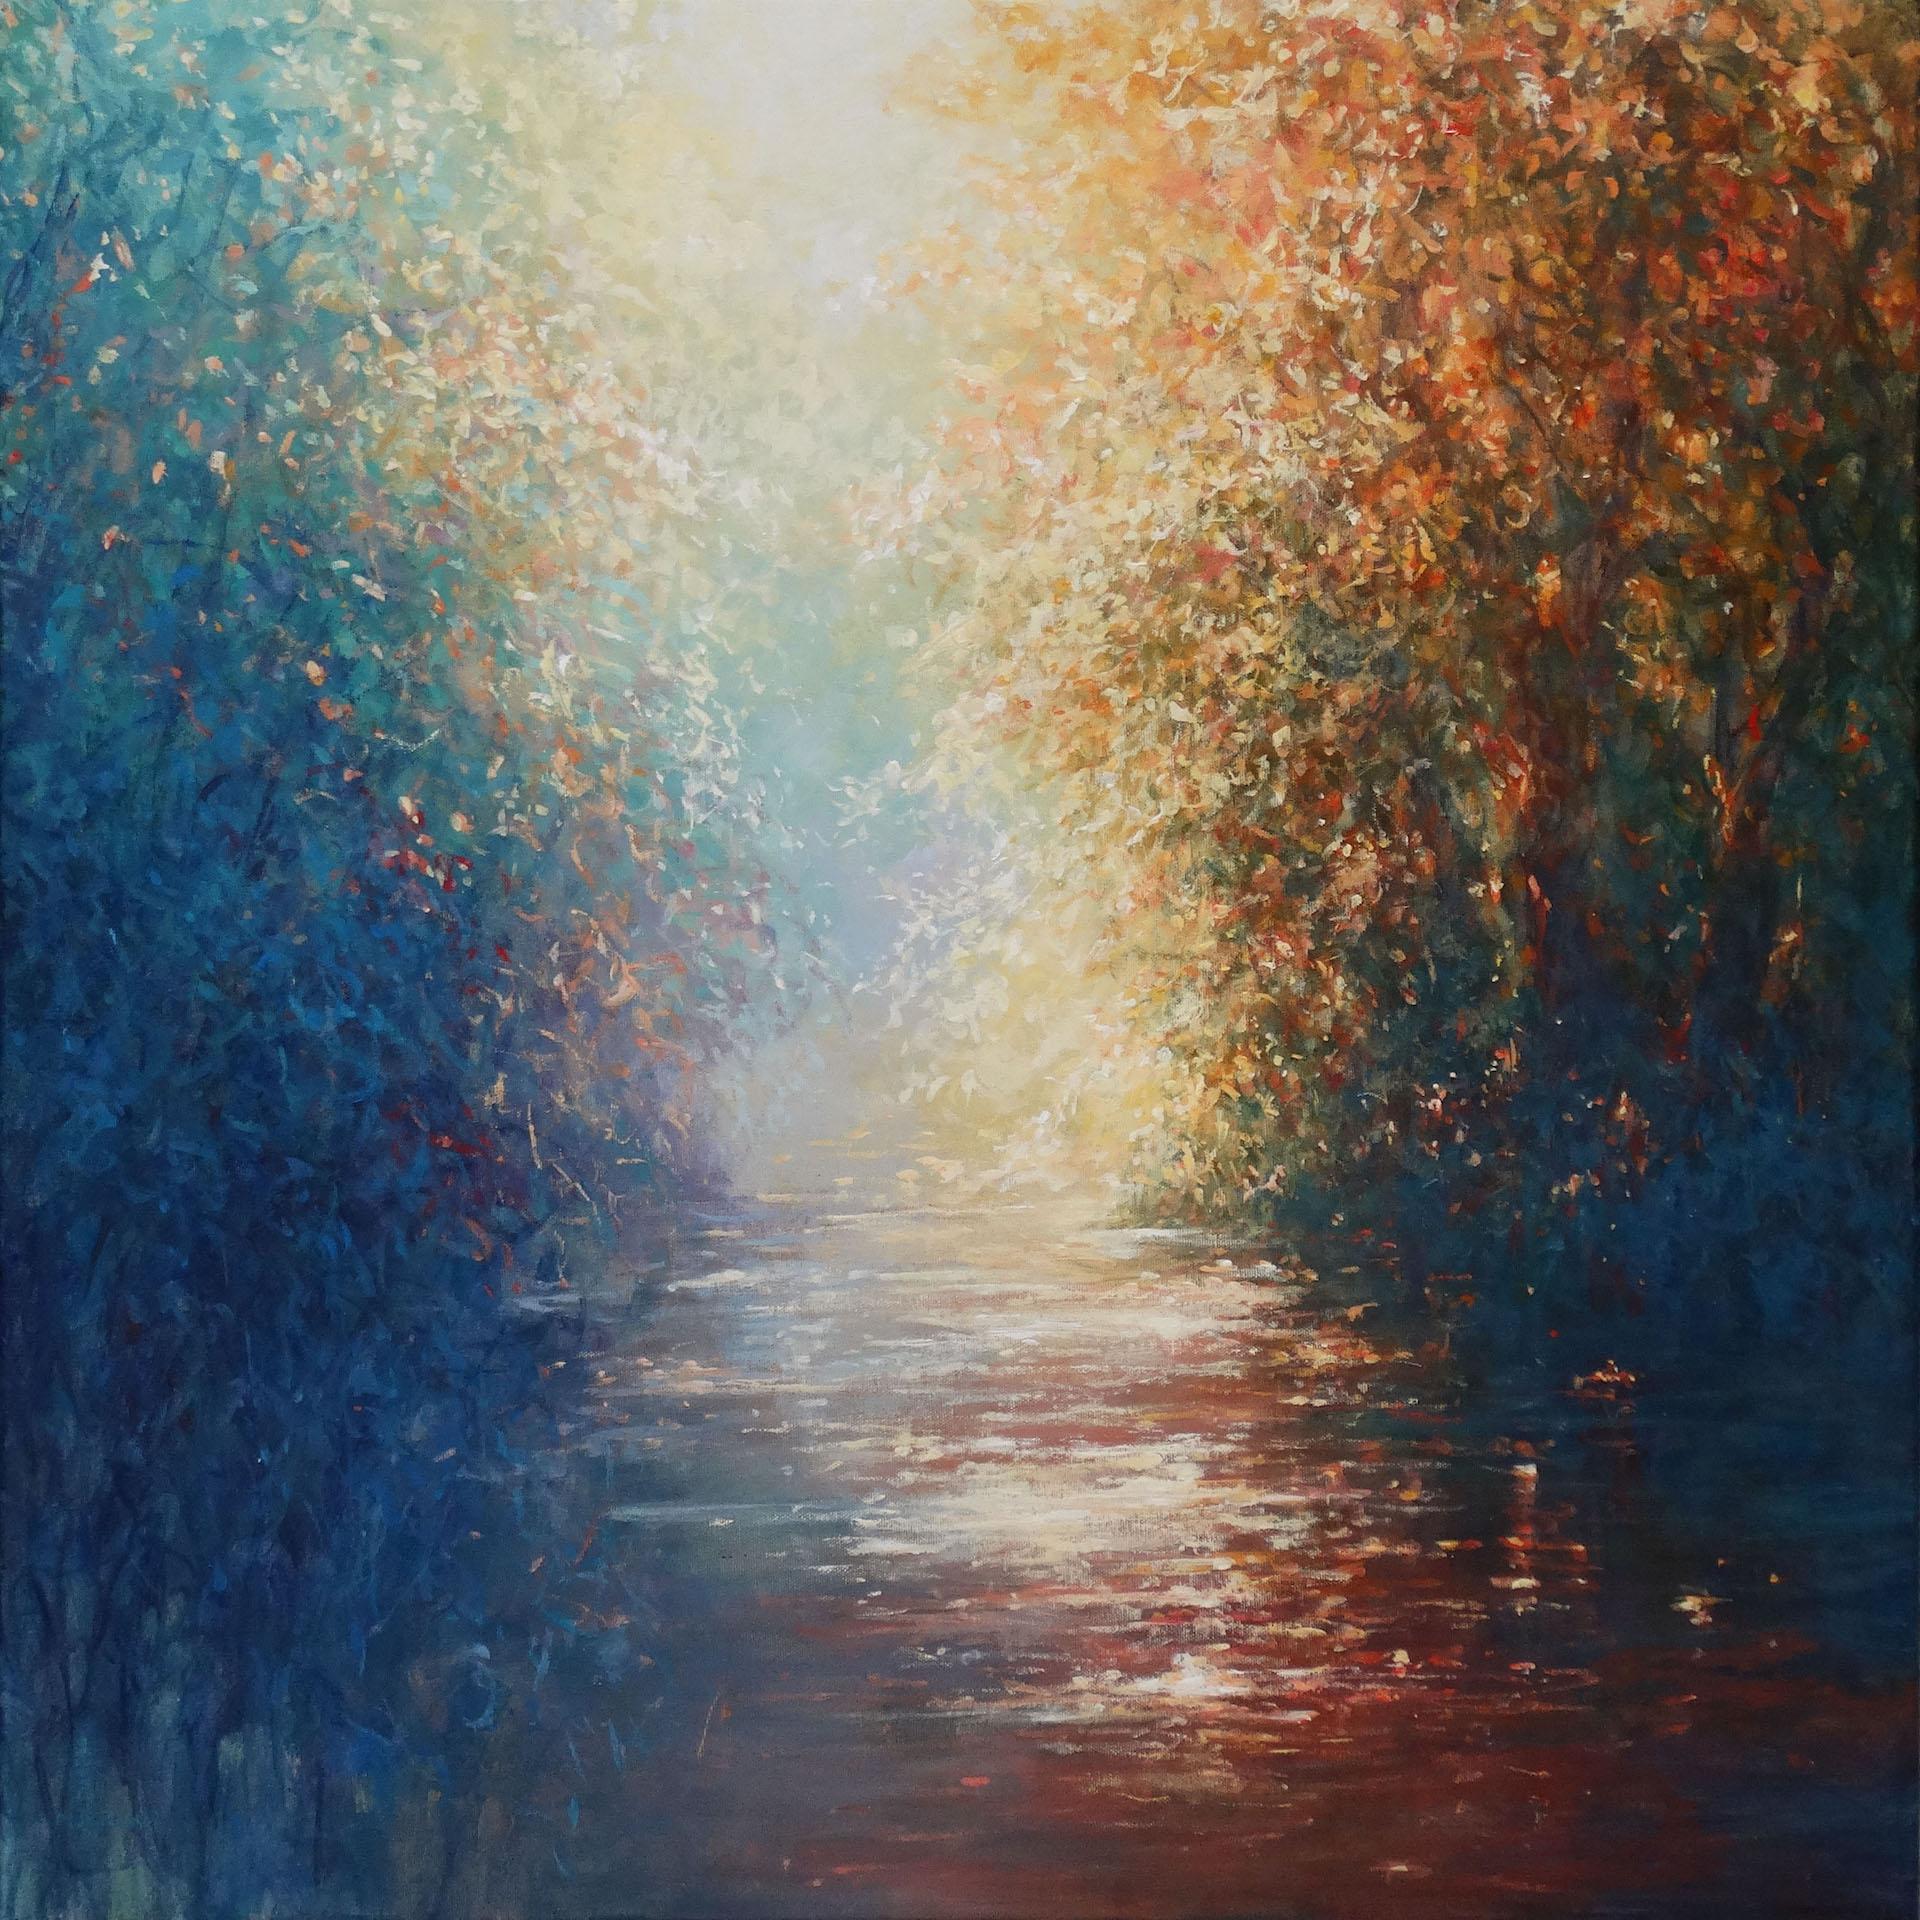 River secrète, peinture de paysage impressionniste abordable, peinture de printemps